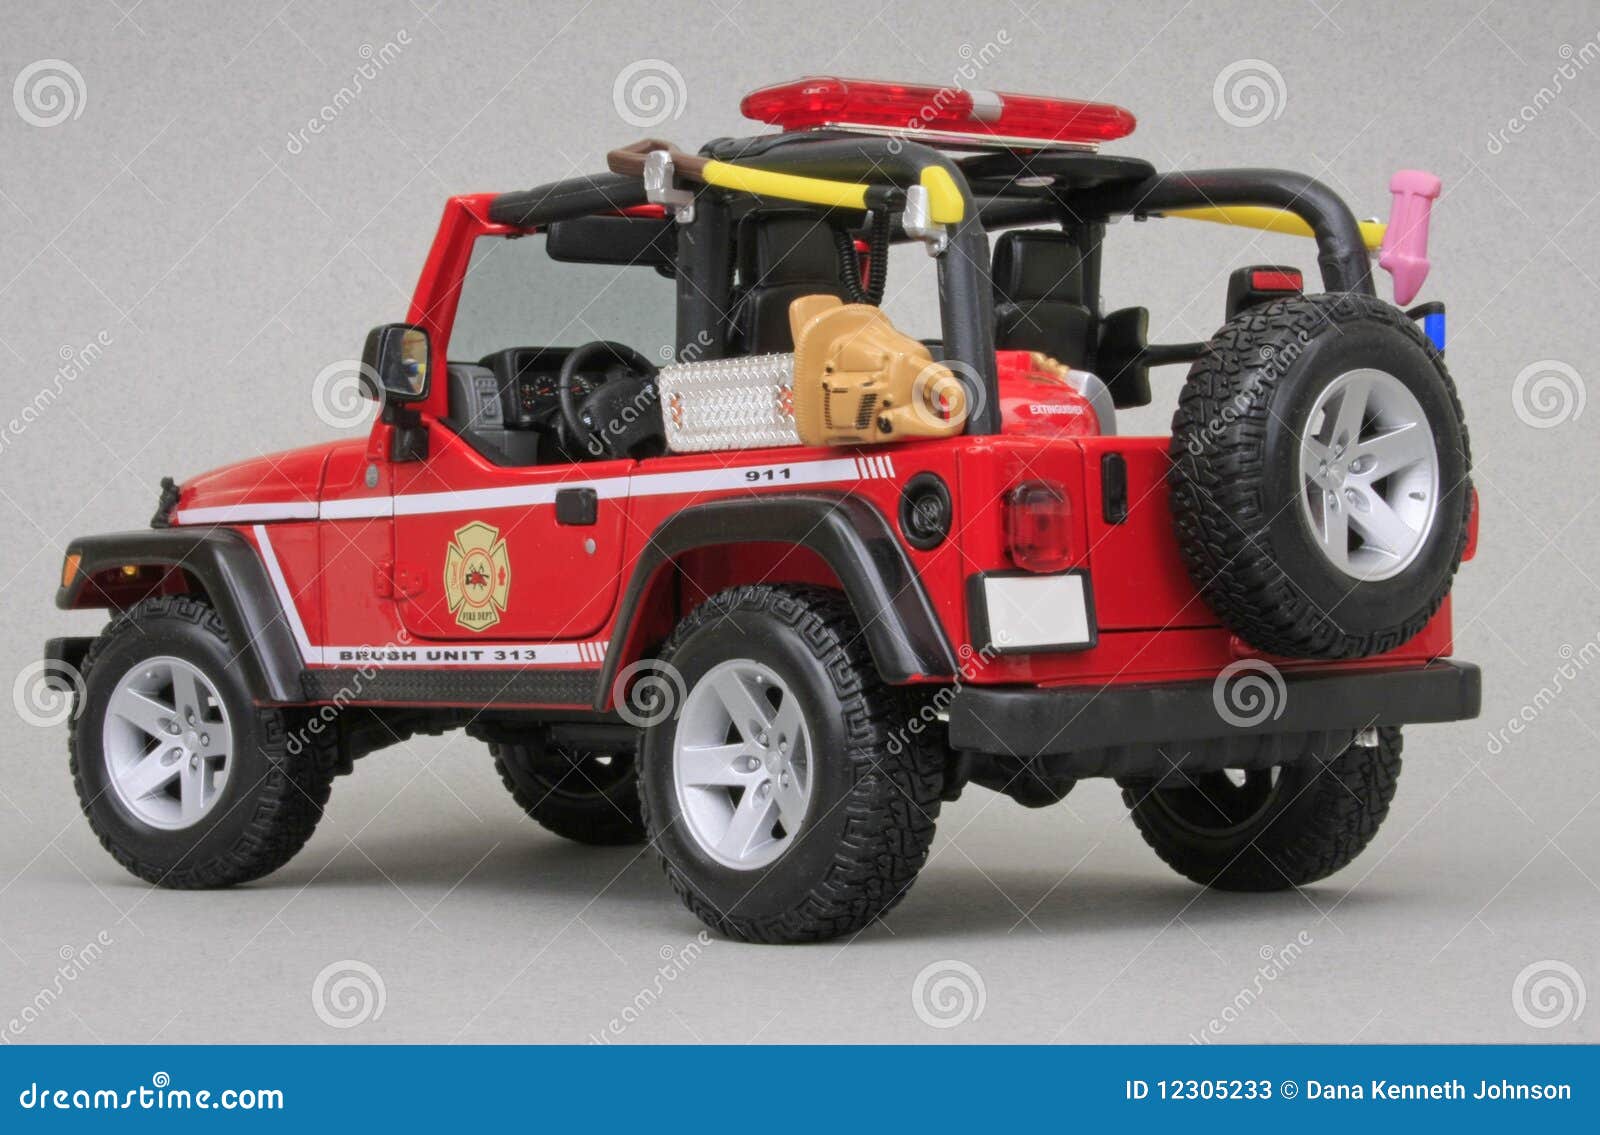 jeep rubicon brush fire unit